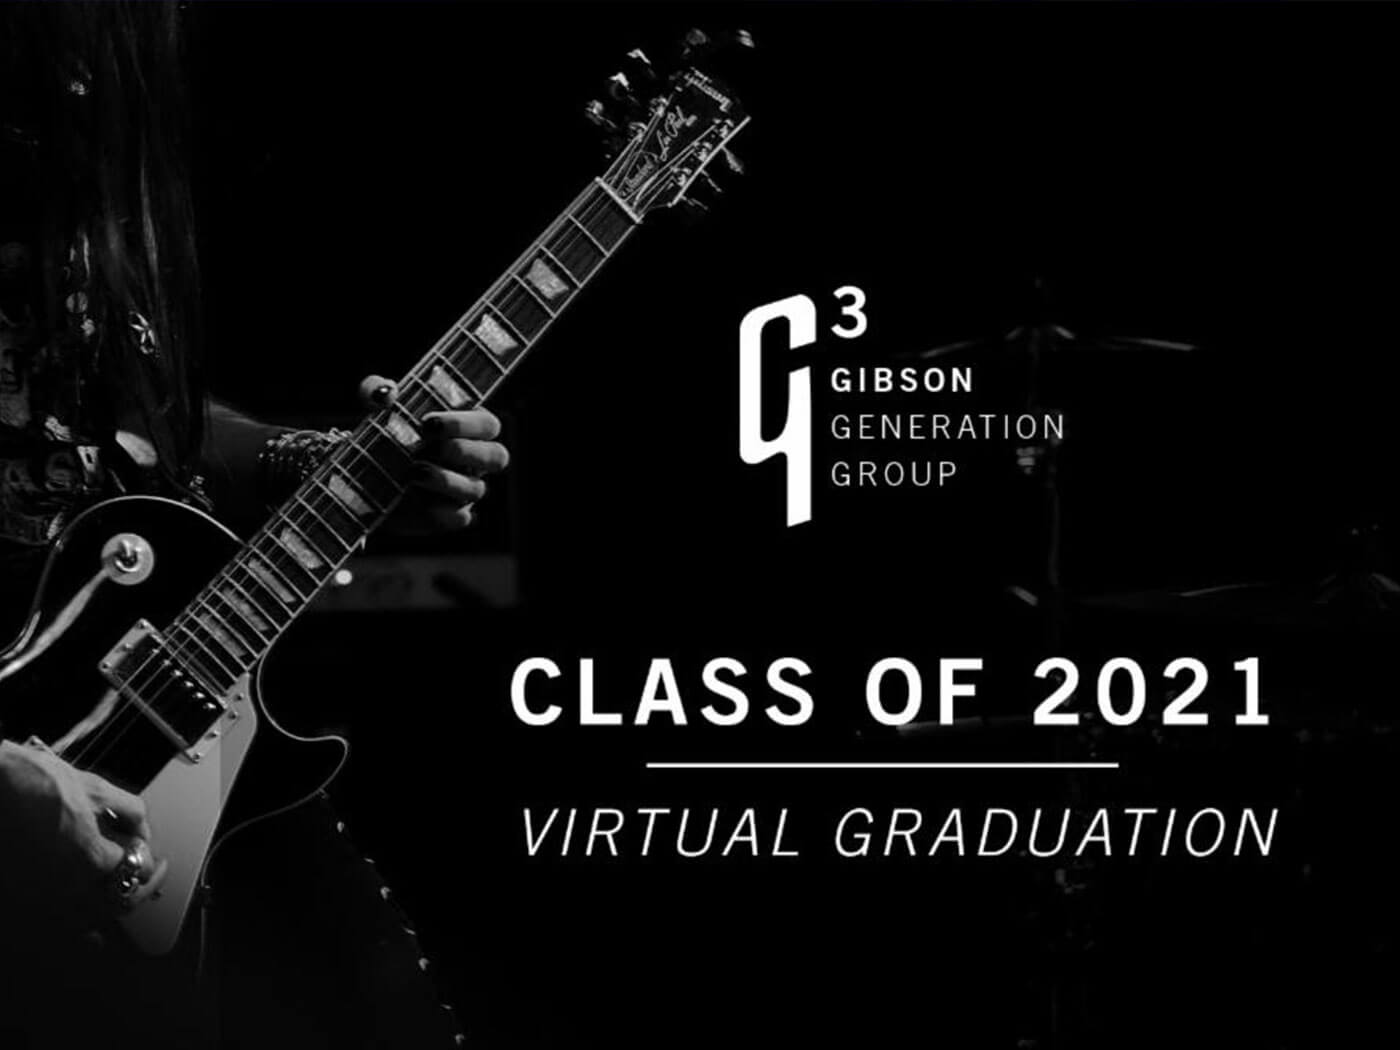 Gibson's G3 Class